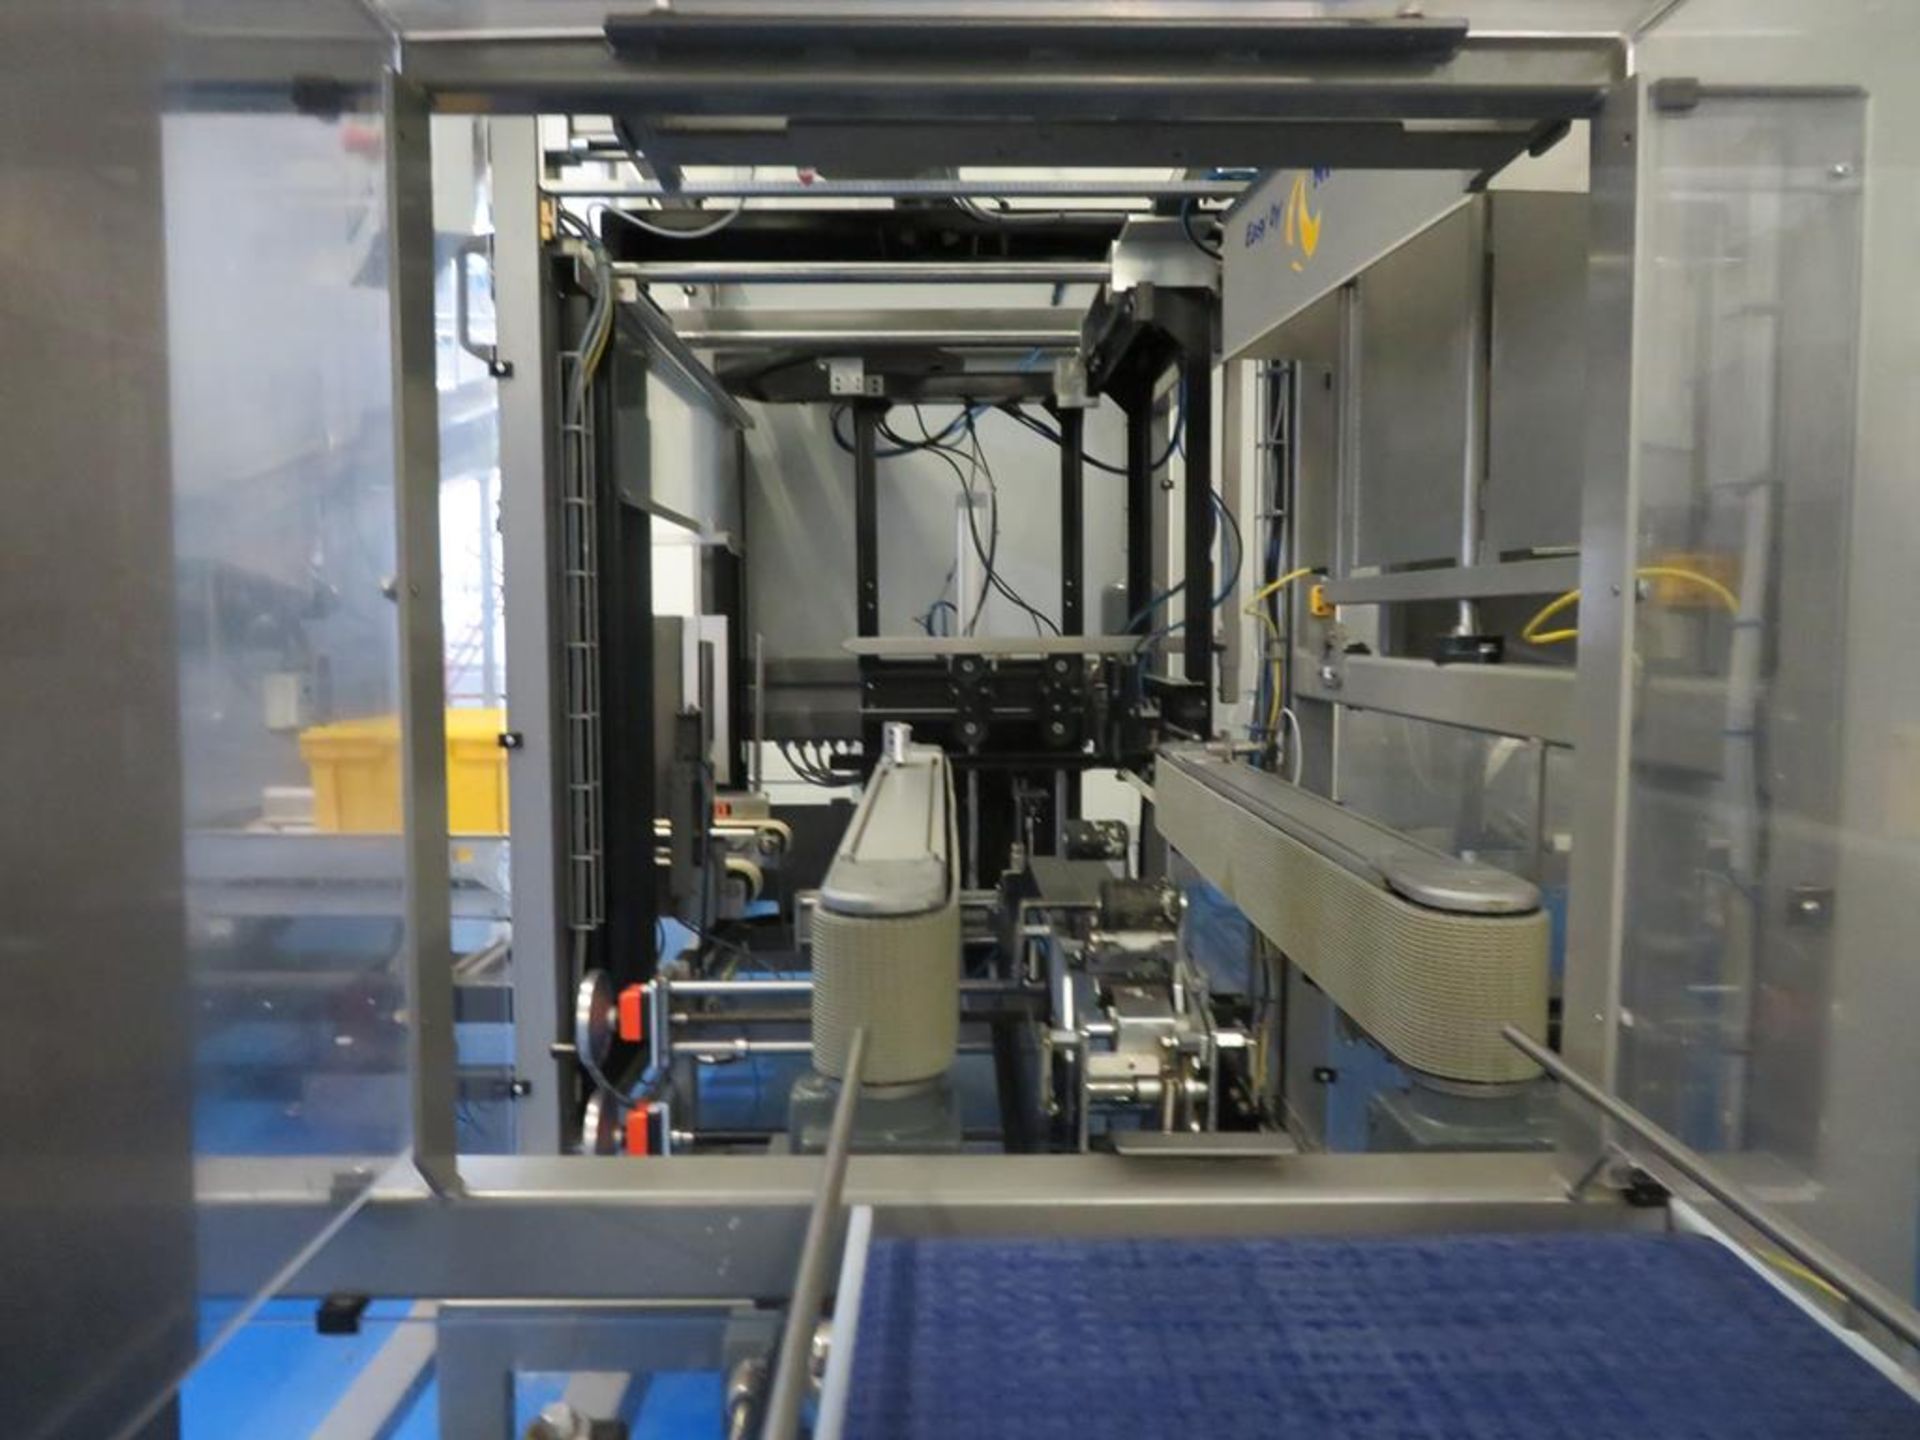 2013 Niverplast Box Erector, Conveyor, Acrylic Slat Belt & Jonge Conveyor - Image 14 of 27